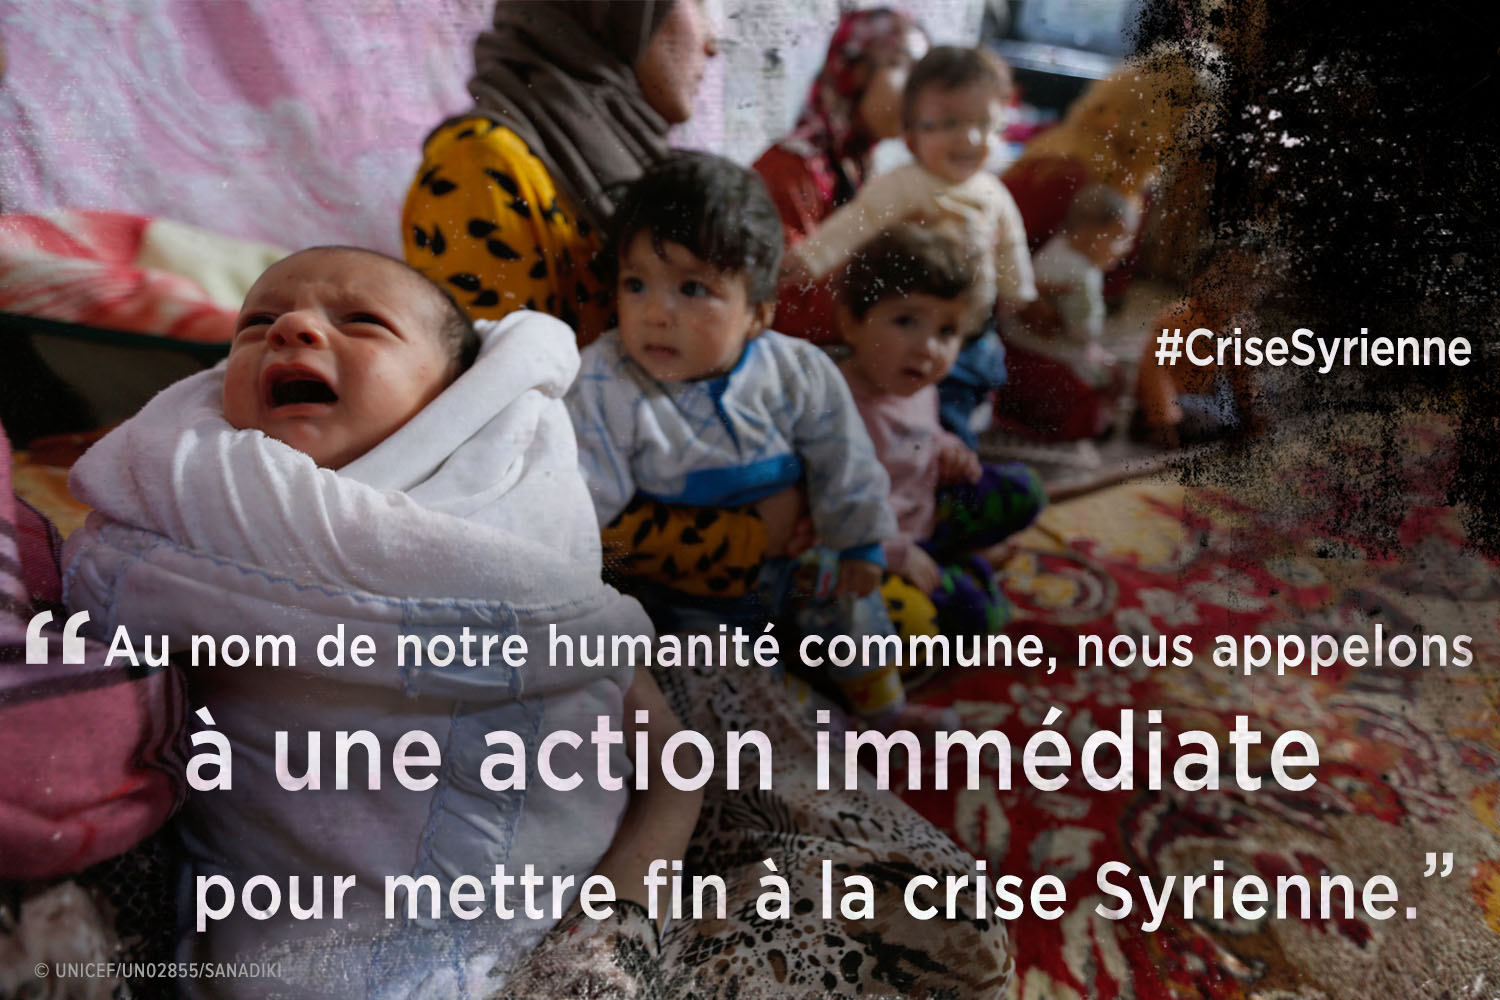 Plus de 100 organisations humanitaires et agences de l’ONU appellent le public à se joindre à elles pour mettre fin aux souffrances en Syrie